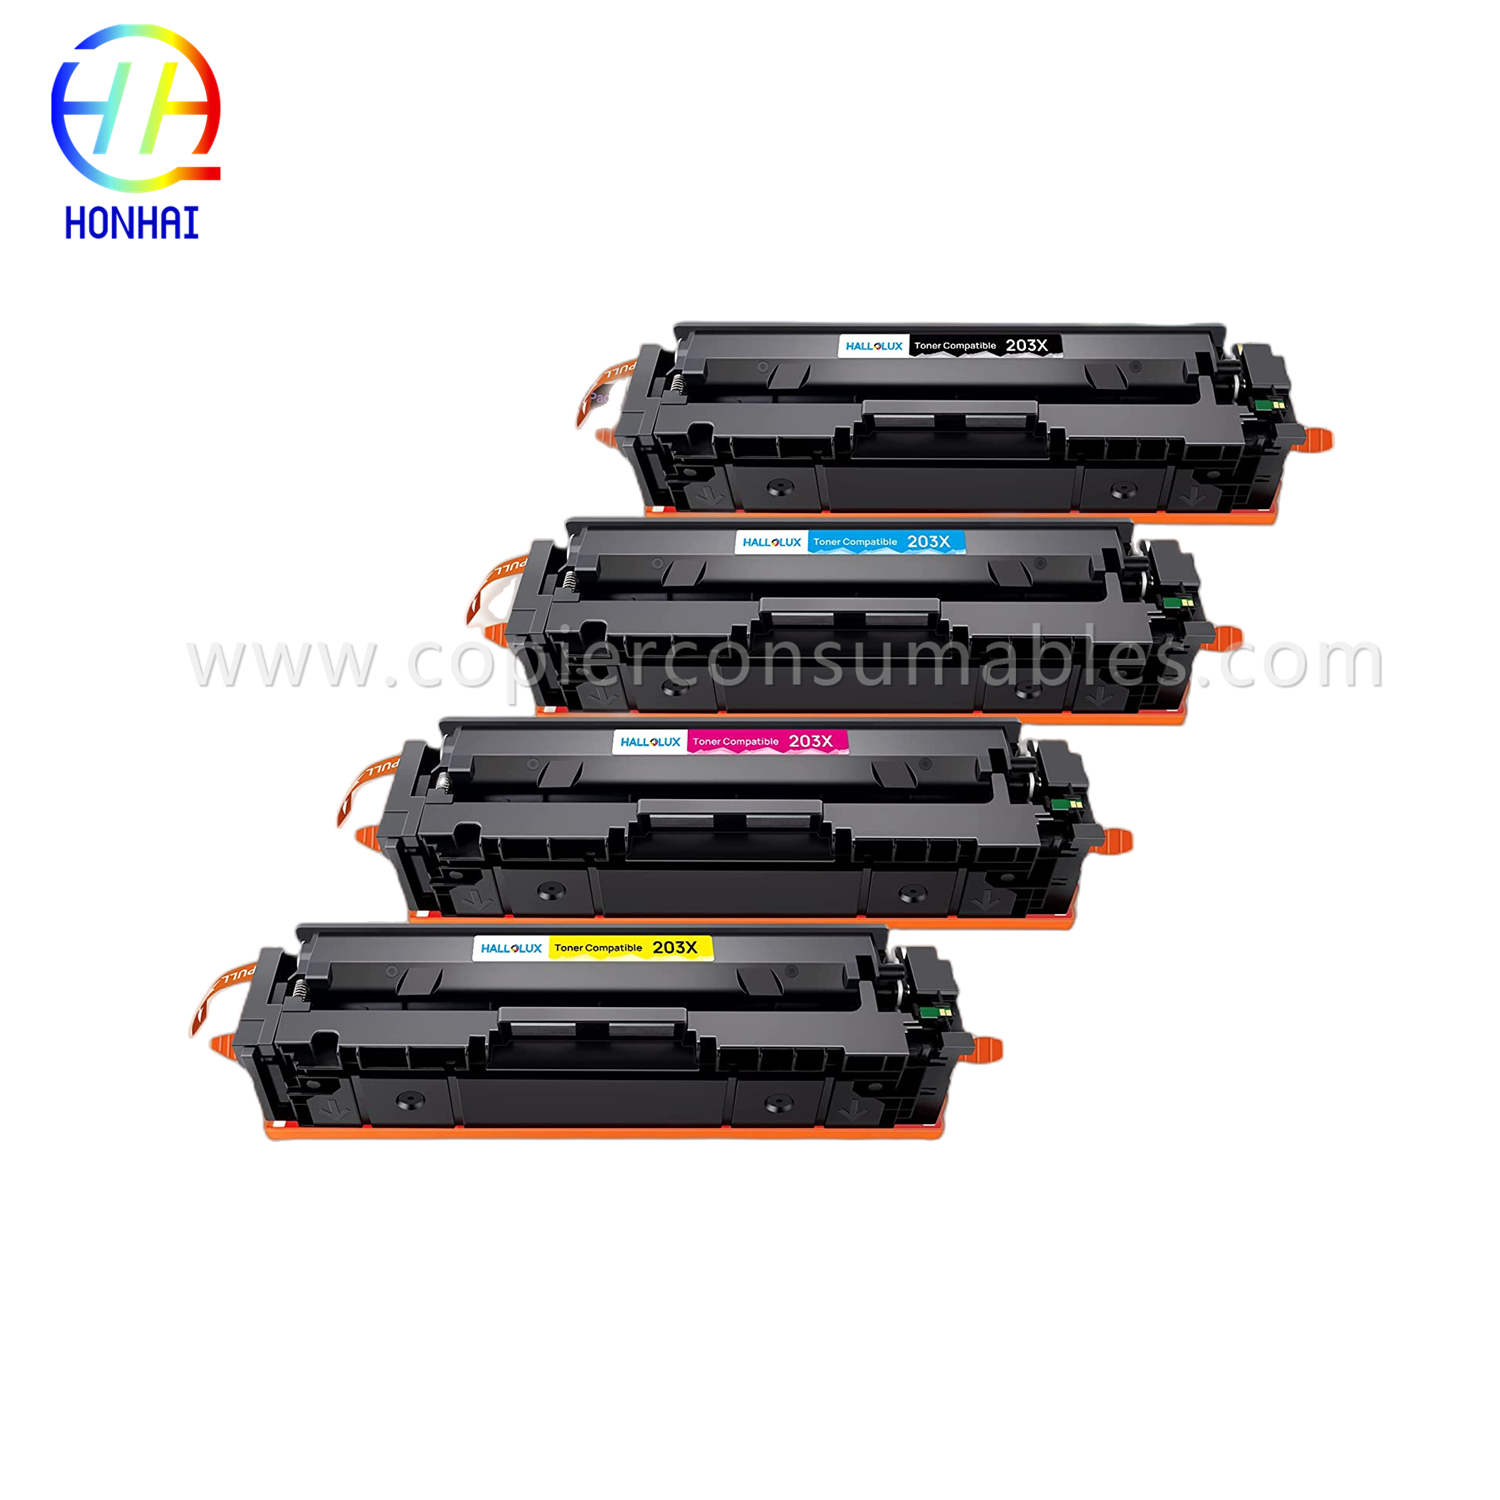 https://www.copierhonhaitech.com/toner-cartridge-for-hp-colour-laserjet-pro-m254dn-m254dw-m254nw-m280nw-m281cdw-m281fdn-m281fdw-203a-cfem5/